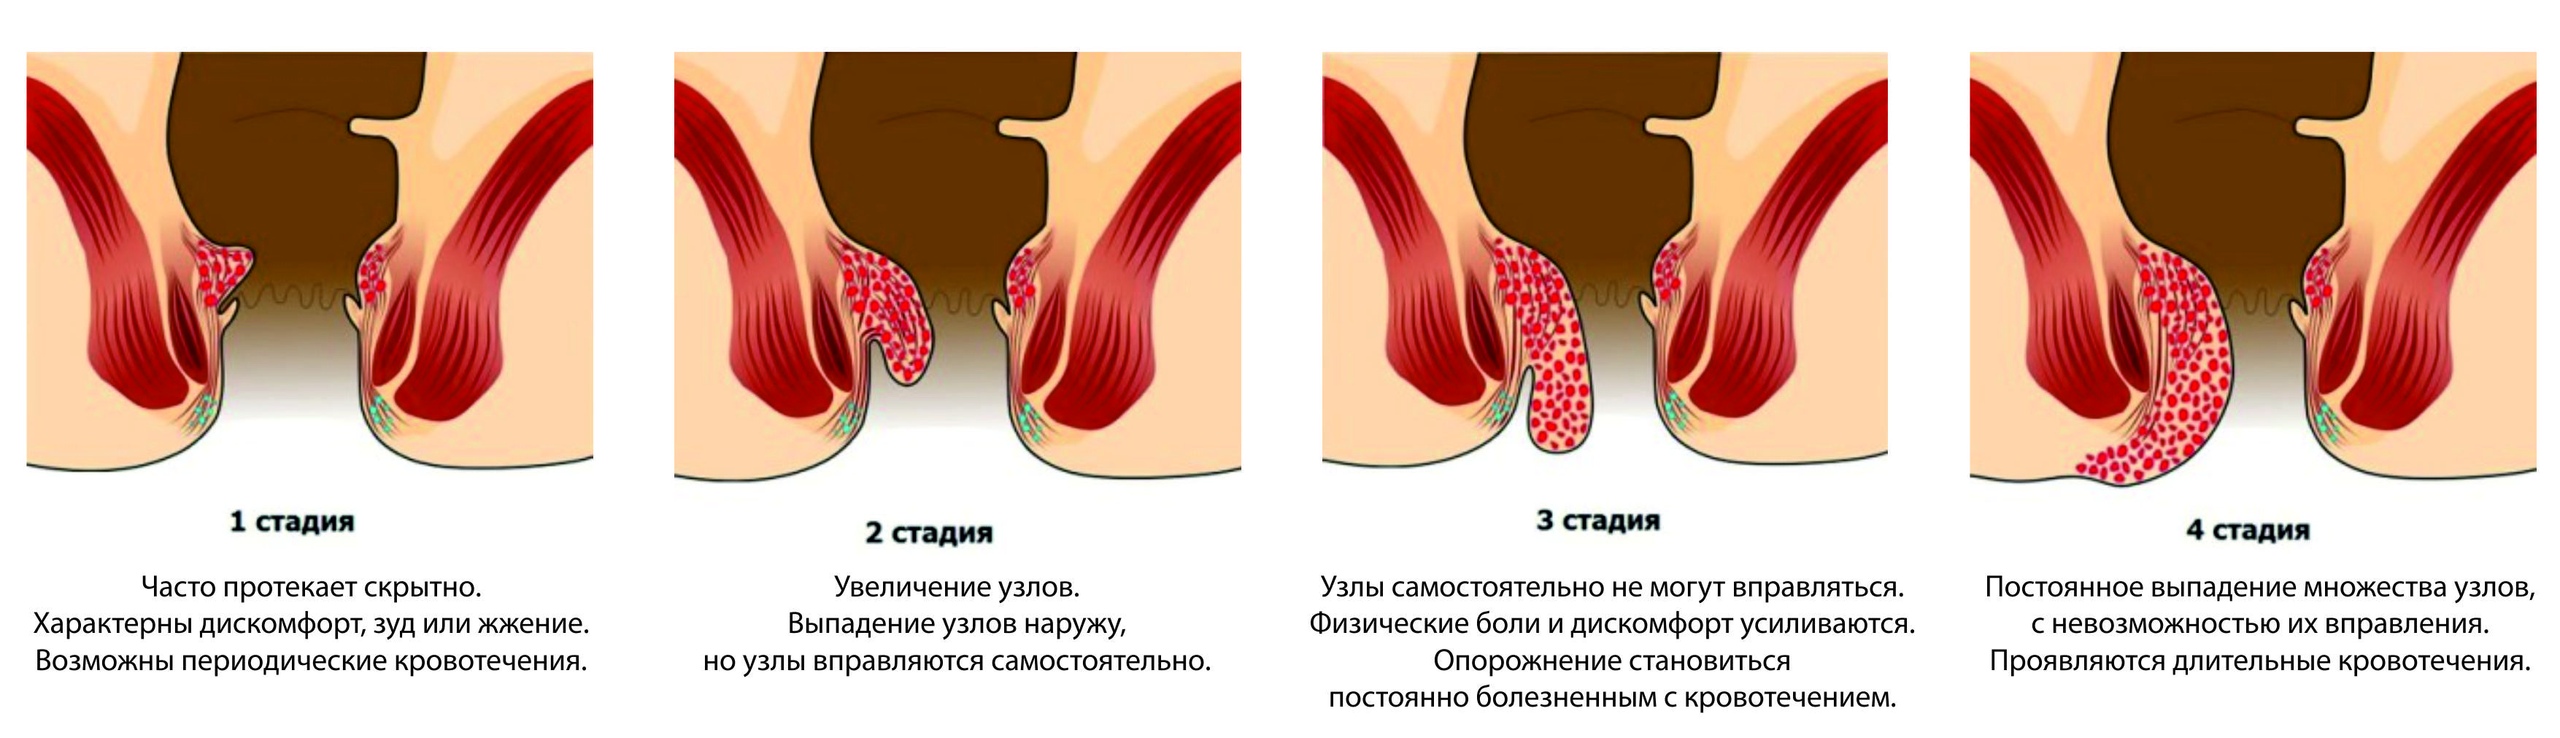 Запущенный, не леченый геморрой может вызвать анемию (снижение количества гемоглобина), заболевания опорно-двигательного аппарата